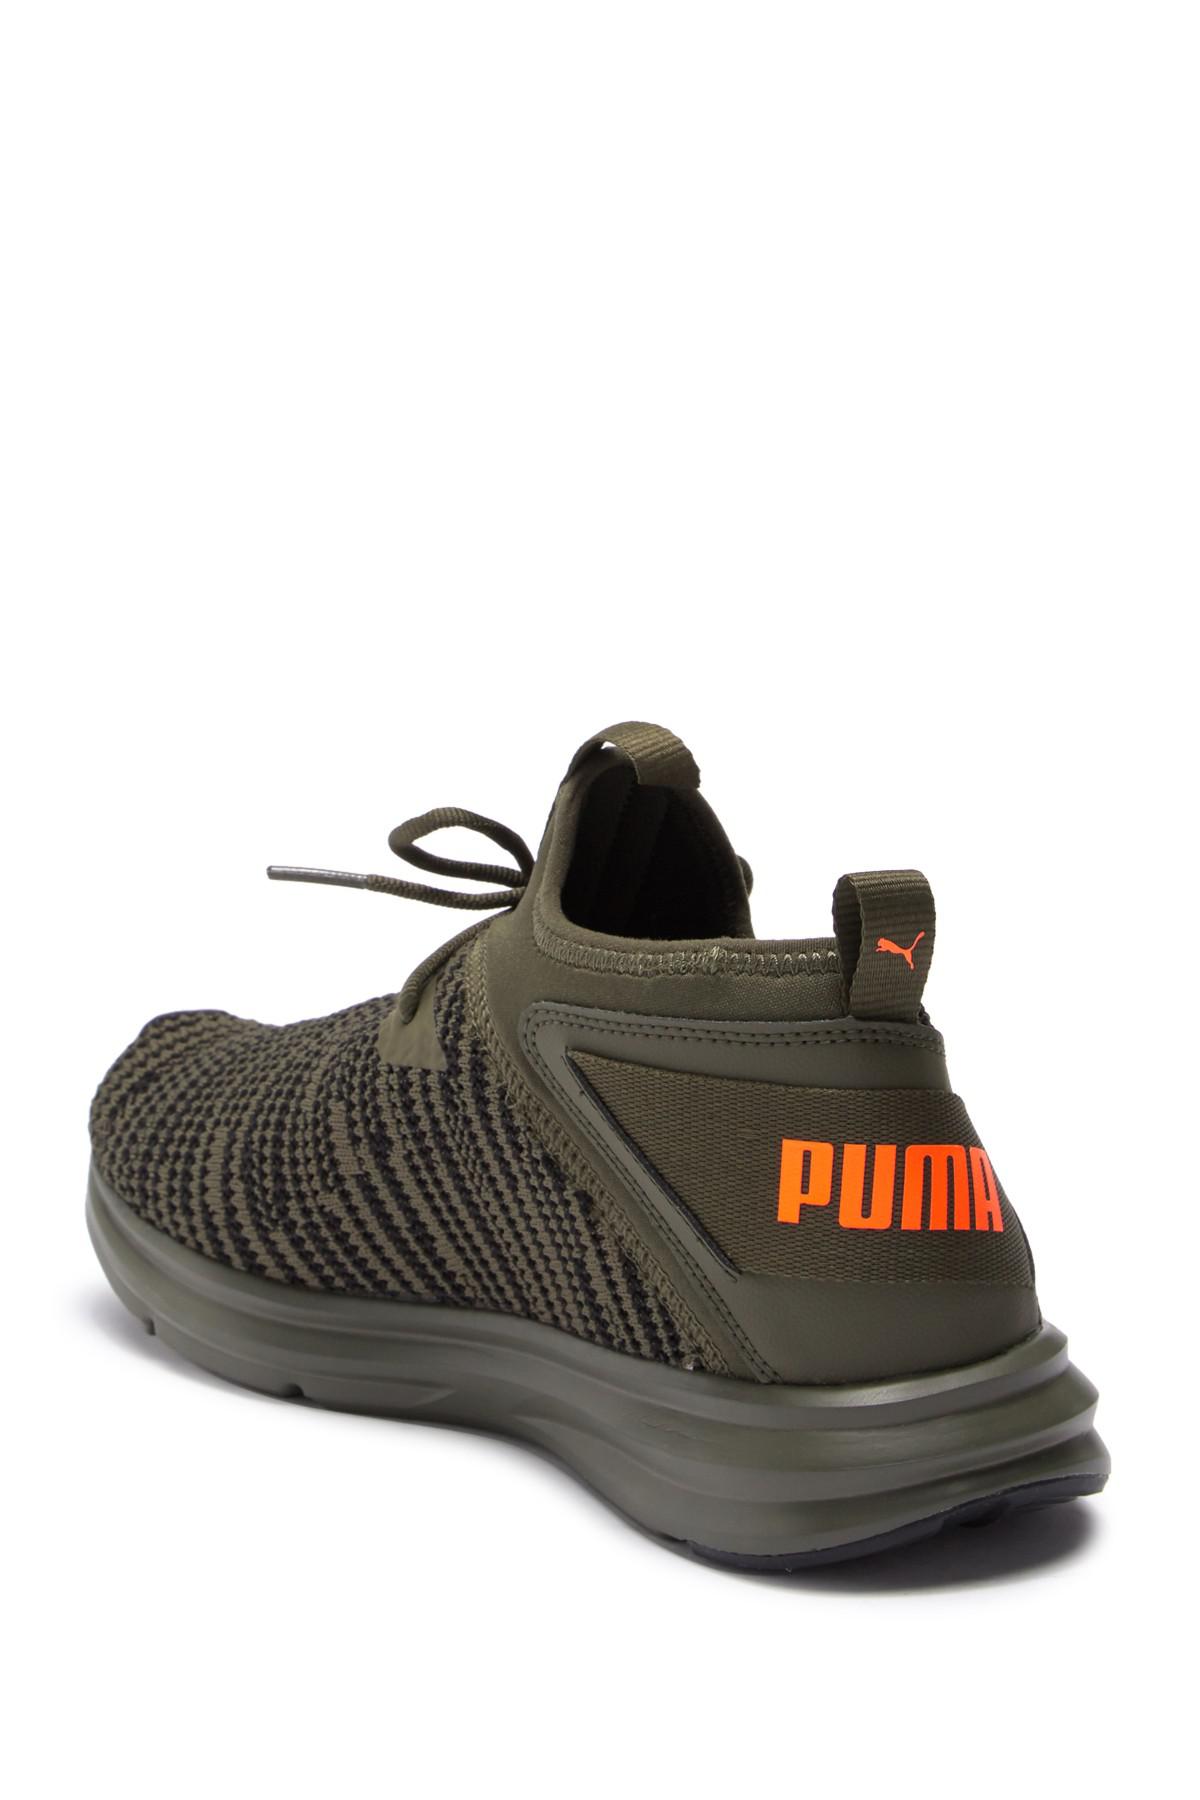 PUMA Enzo Peak Sneaker in Olive Green/Orange (Green) for Men | Lyst